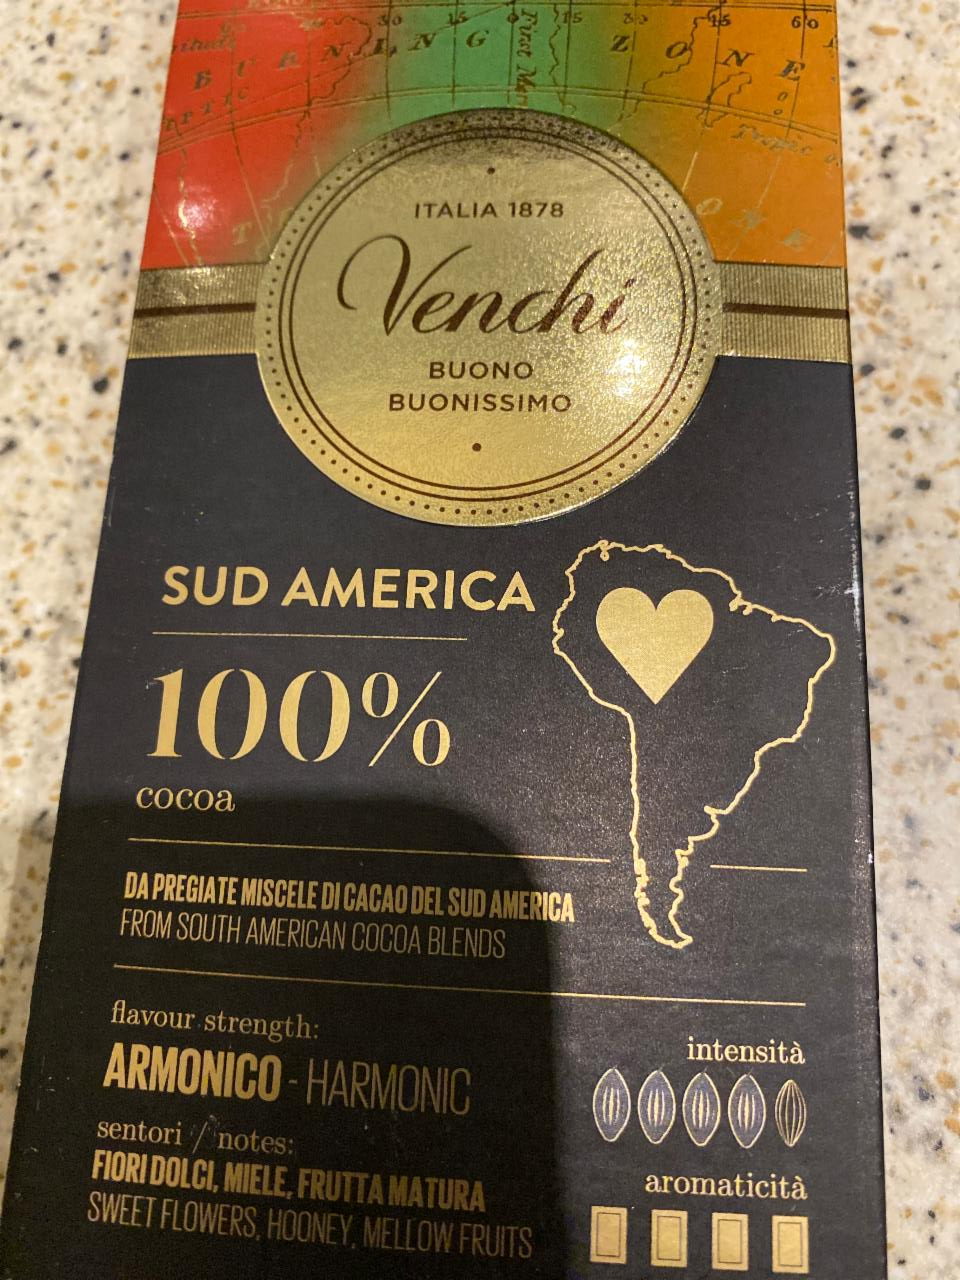 Fotografie - Venchi 100% cocoa sud america